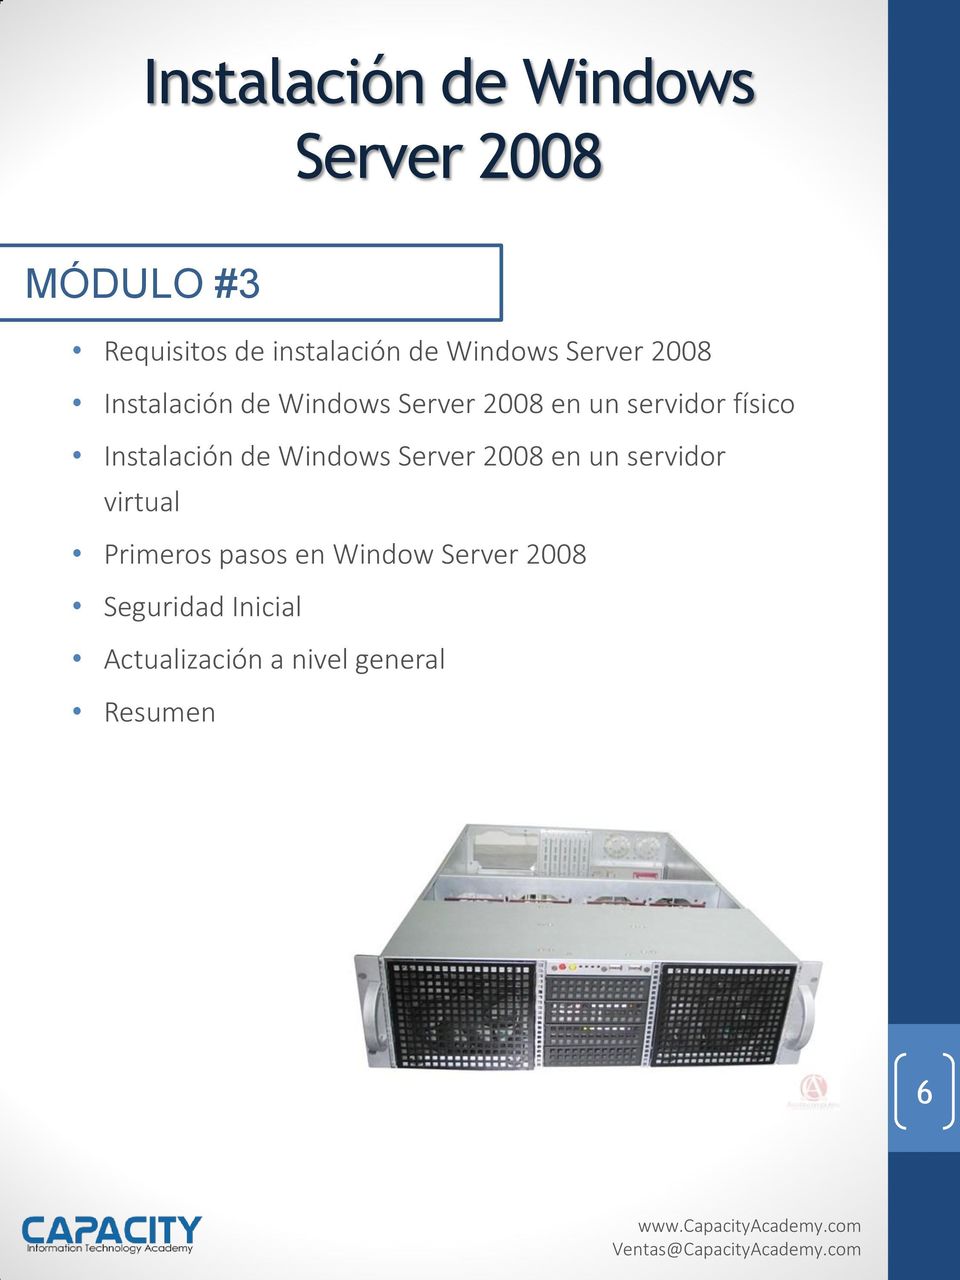 físico Instalación de Windows Server 2008 en un servidor virtual Primeros